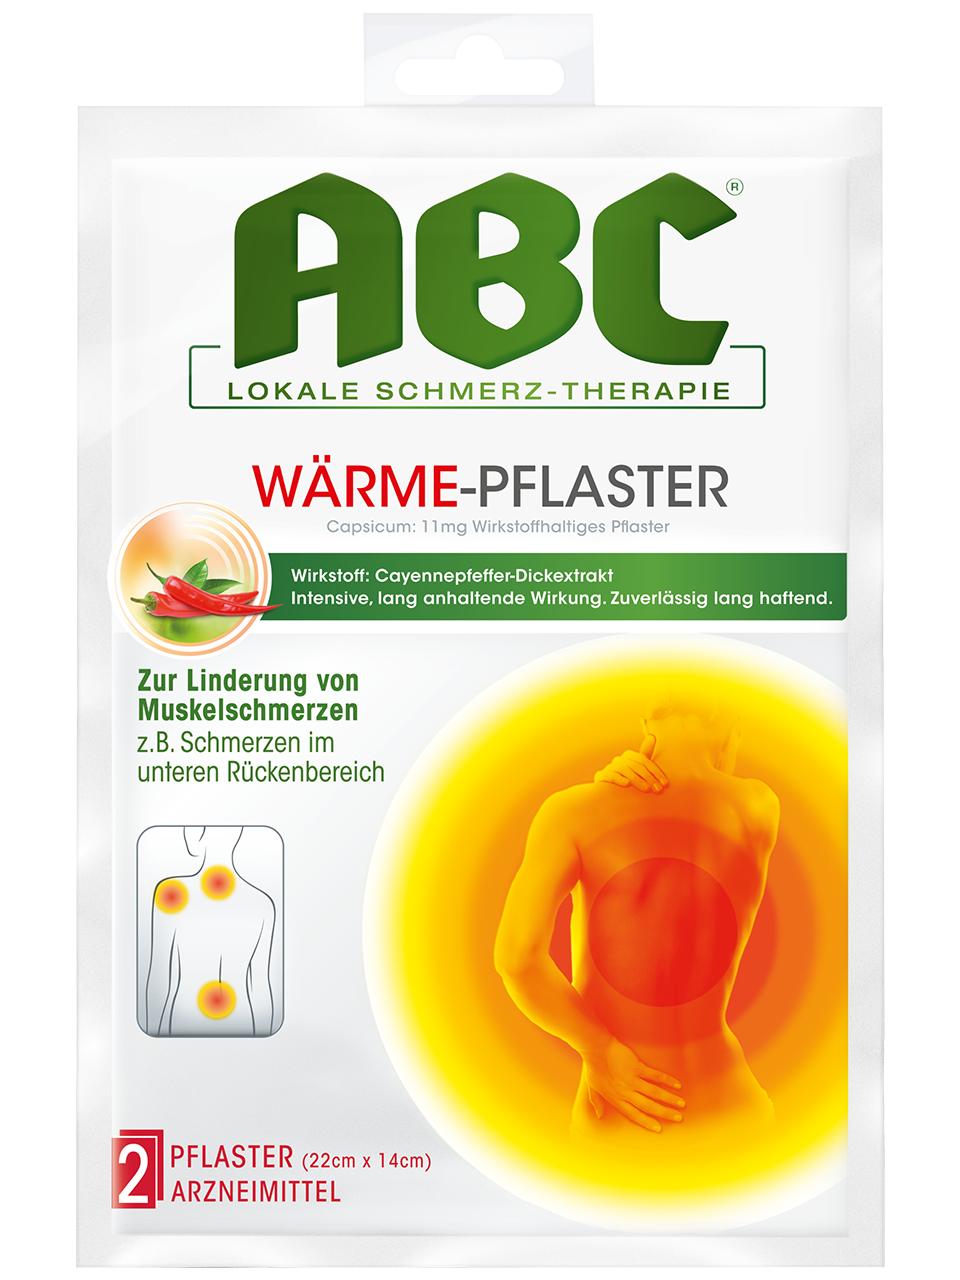 ABC Lokale Schmerz-Therapie Wärme-Pflaster Capsicum 11 mg - wirkstoffhaltiges Pflaster